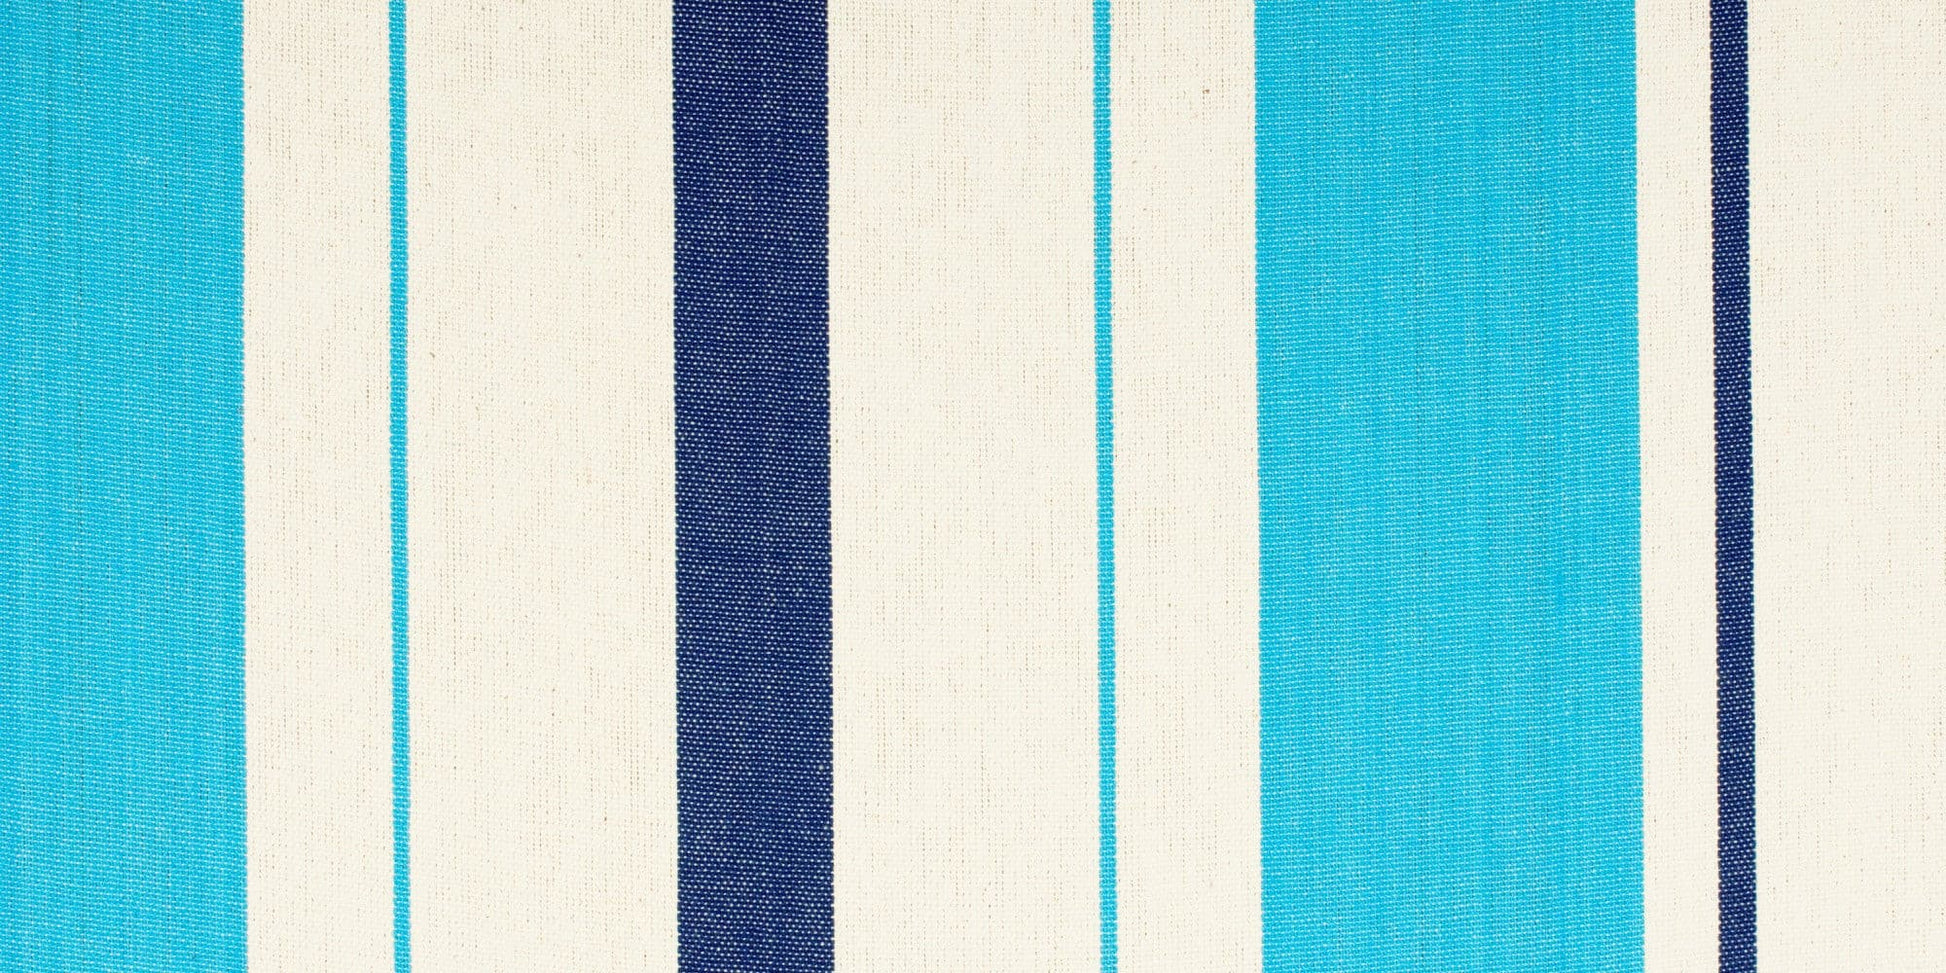 Caribeña Aqua Blue - Hamaca clásica individual de algodón